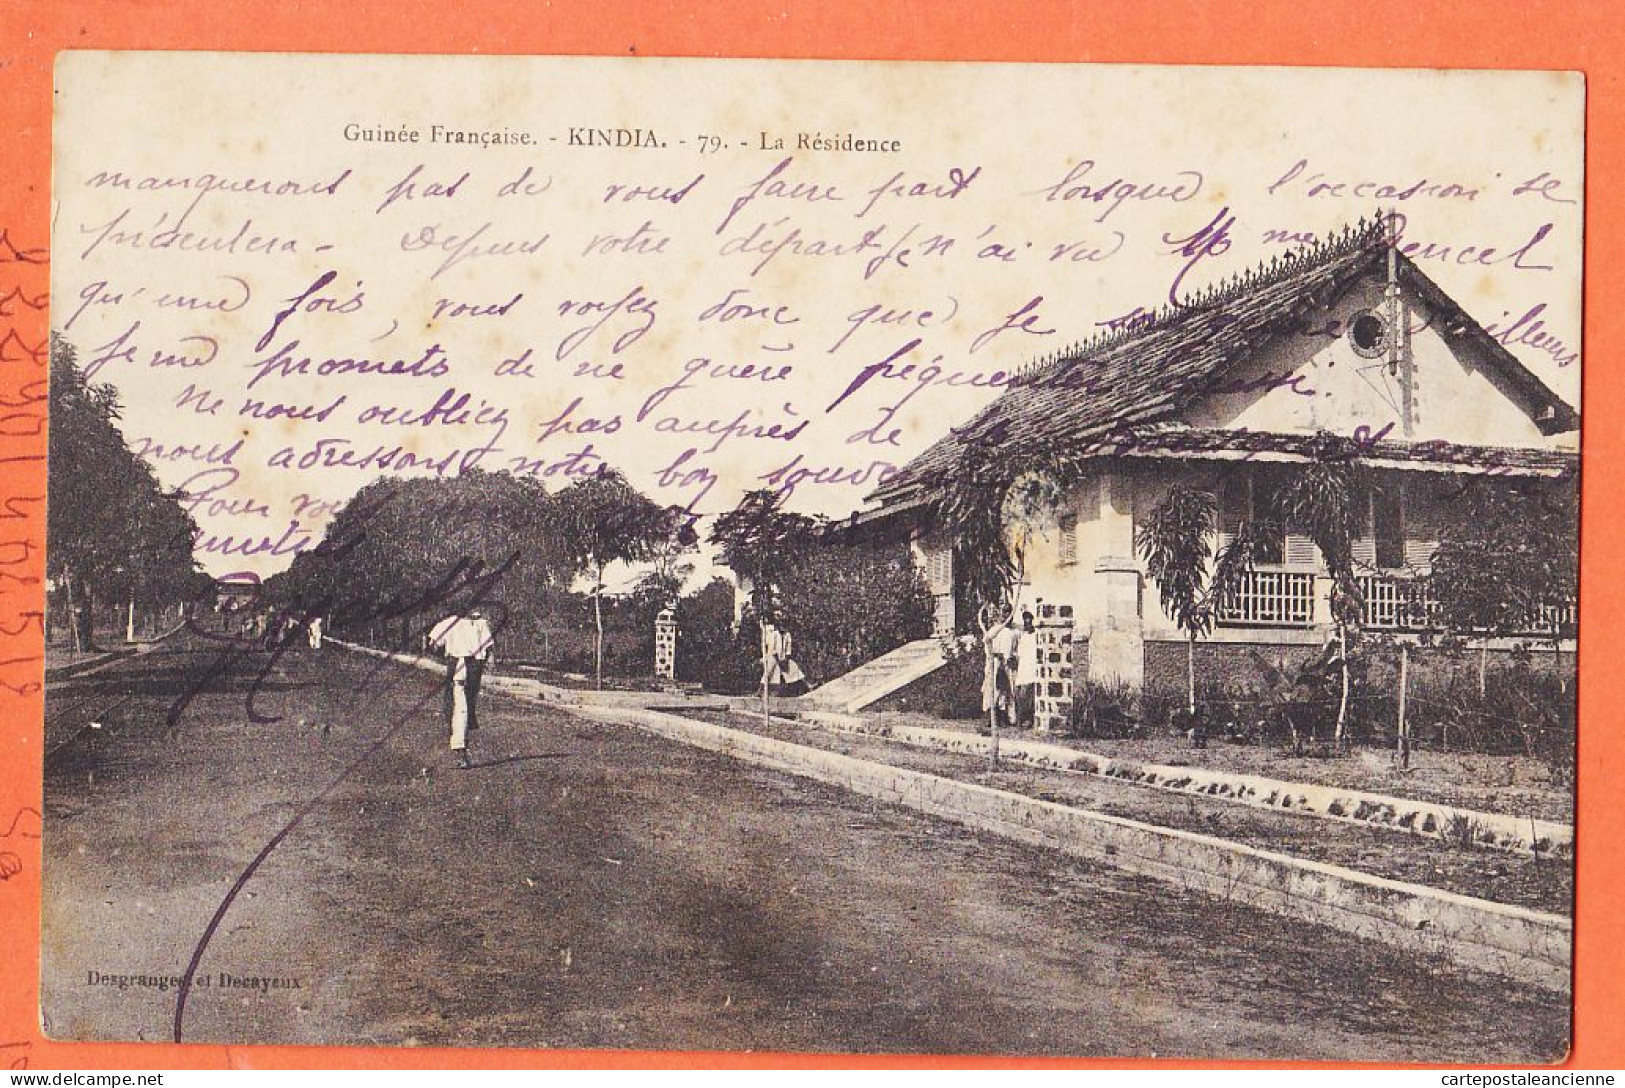 35707 / ♥️ Rare KINDIA Guinée Française ◉ La Residence 1905s ◉ Edition DESGRANGES DECAYEUX  Afrique Occidentale   - French Guinea